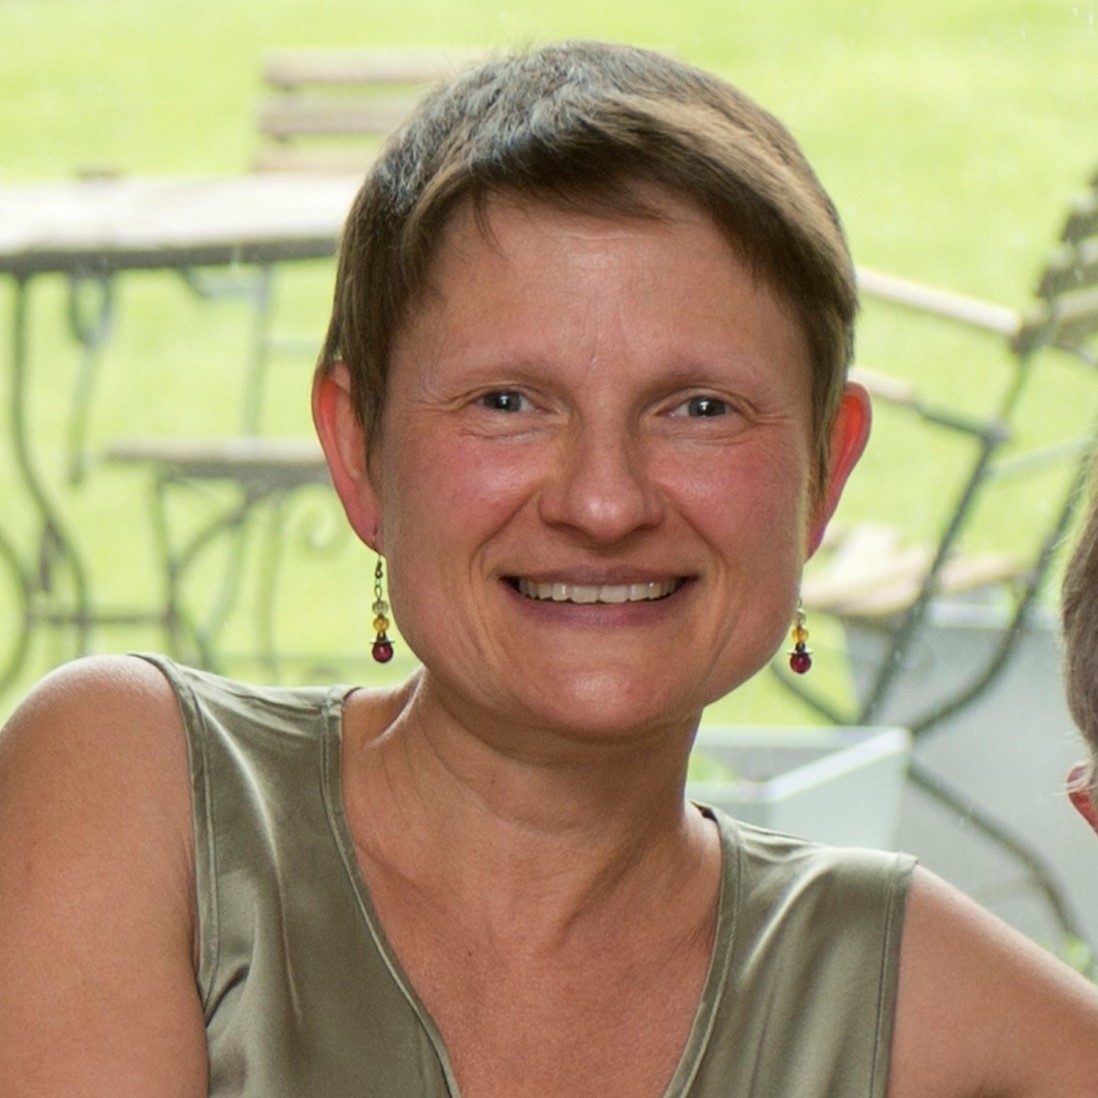 Profielfoto van Kristel Claesen, bezielster van Klankdruppels, met glimlach.